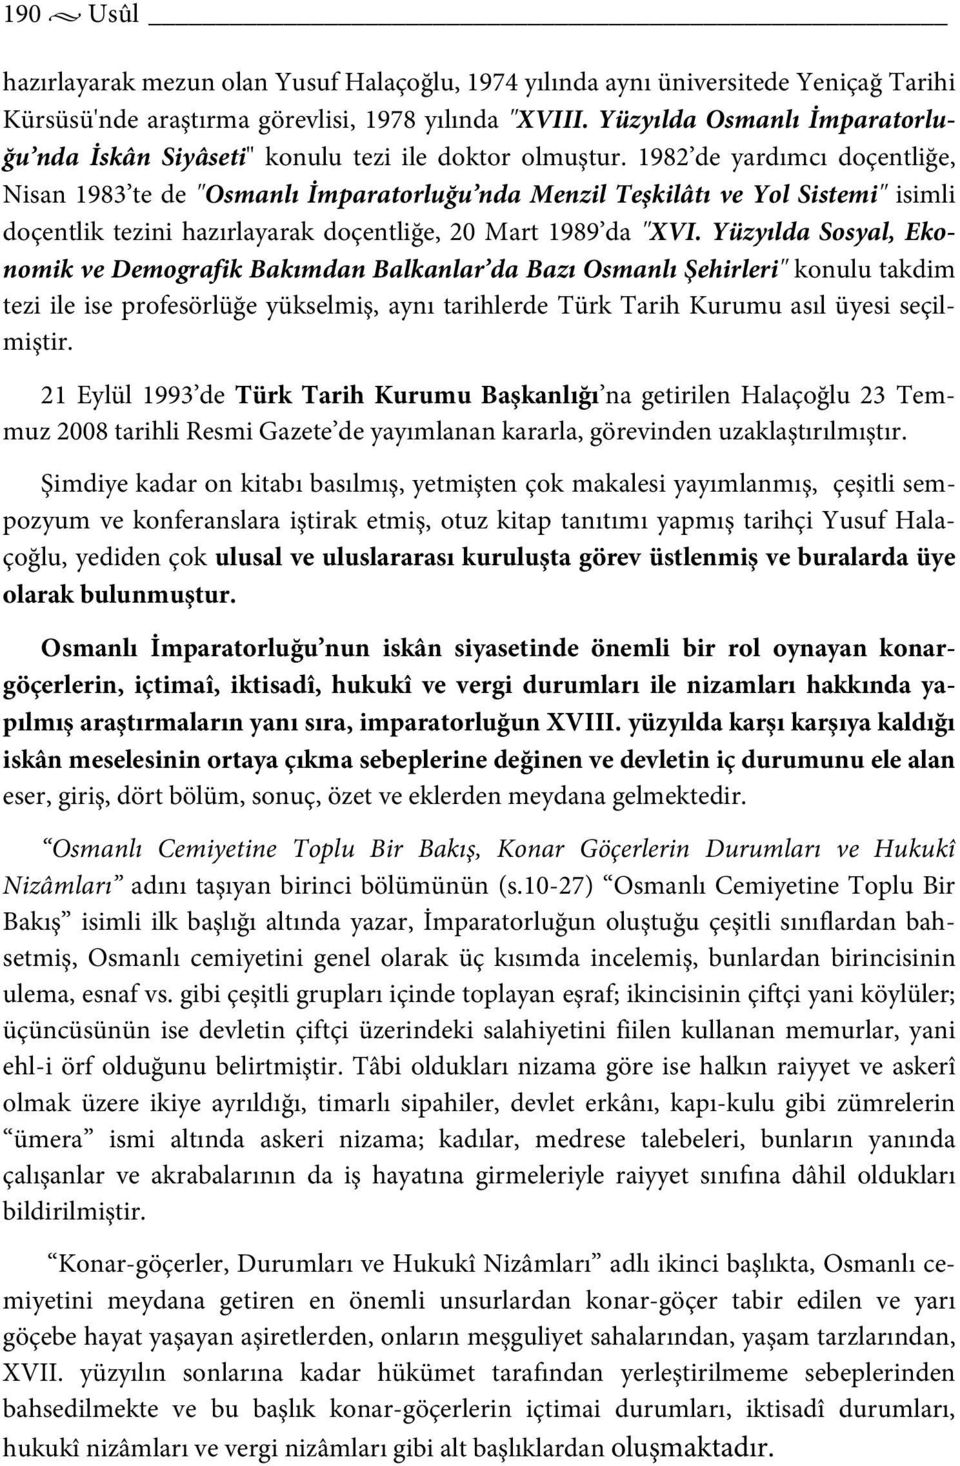 1982 de yardımcı doçentliğe, Nisan 1983 te de "Osmanlı İmparatorluğu nda Menzil Teşkilâtı ve Yol Sistemi" isimli doçentlik tezini hazırlayarak doçentliğe, 20 Mart 1989 da "XVI.